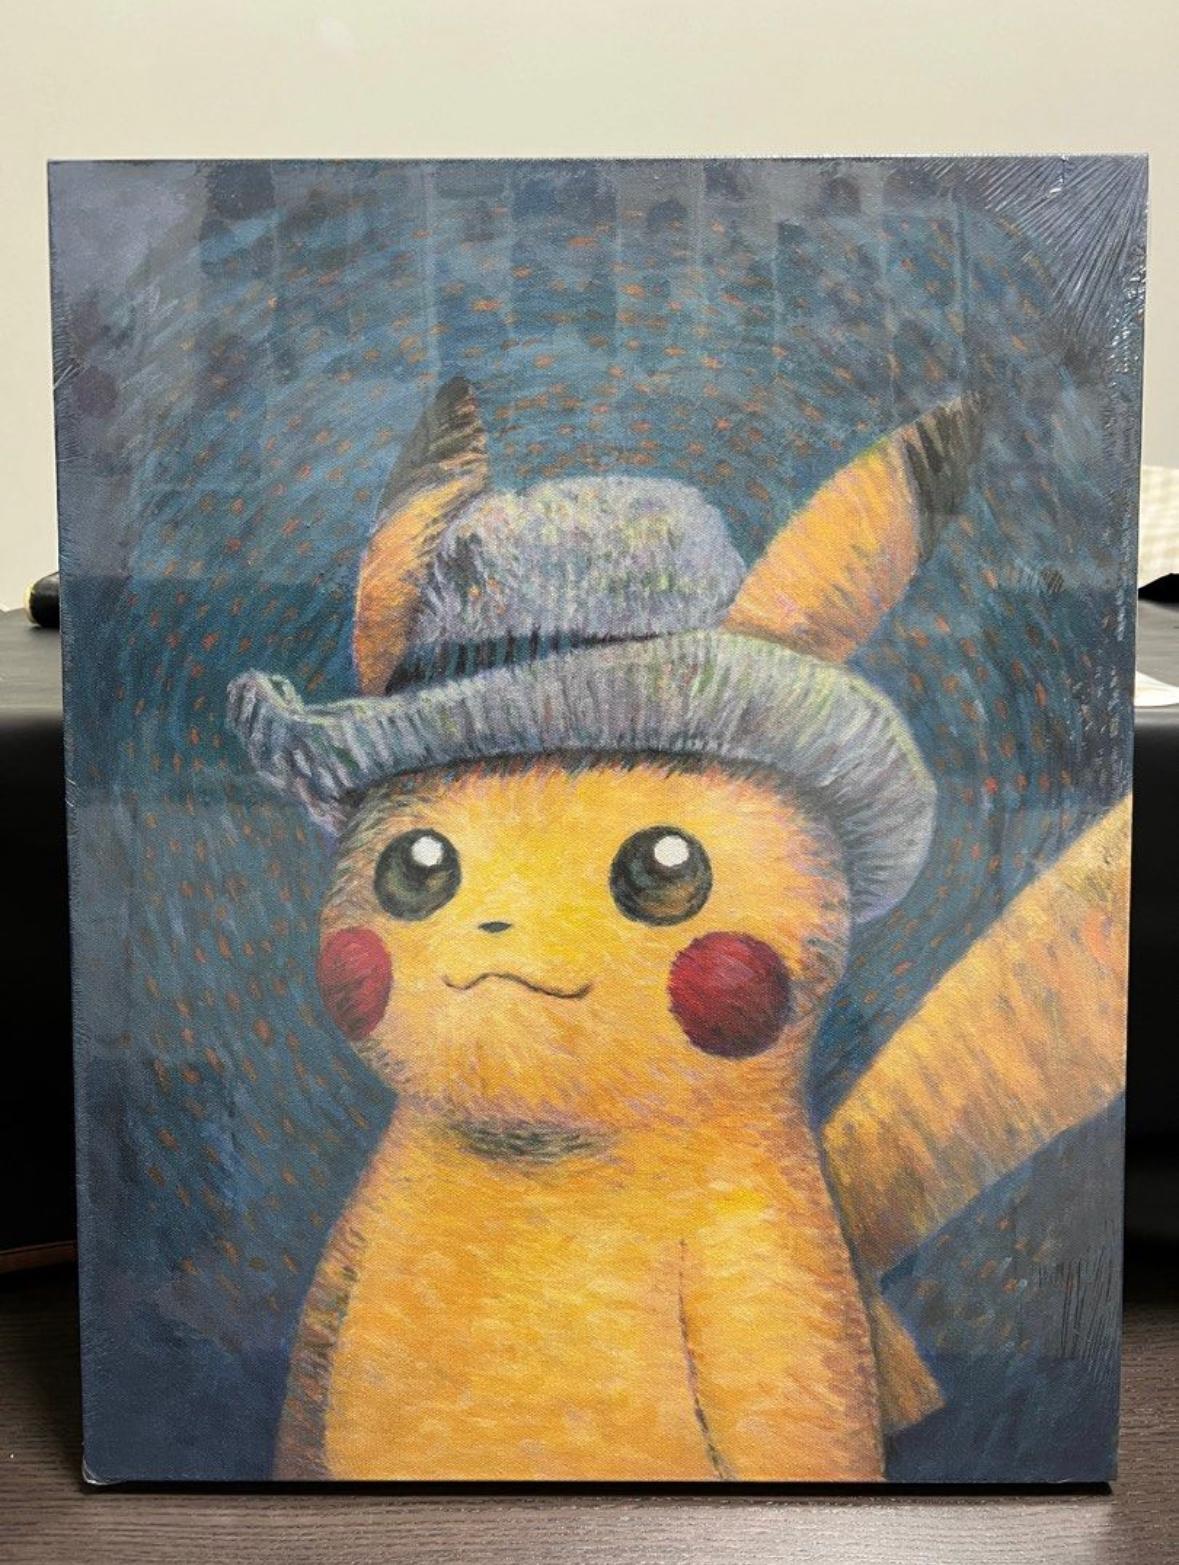 Vincent van Gogh X Pokemon Pikachu Self-portrait with Grey Felt Hat Canvas - Print by (After) Vincent van Gogh